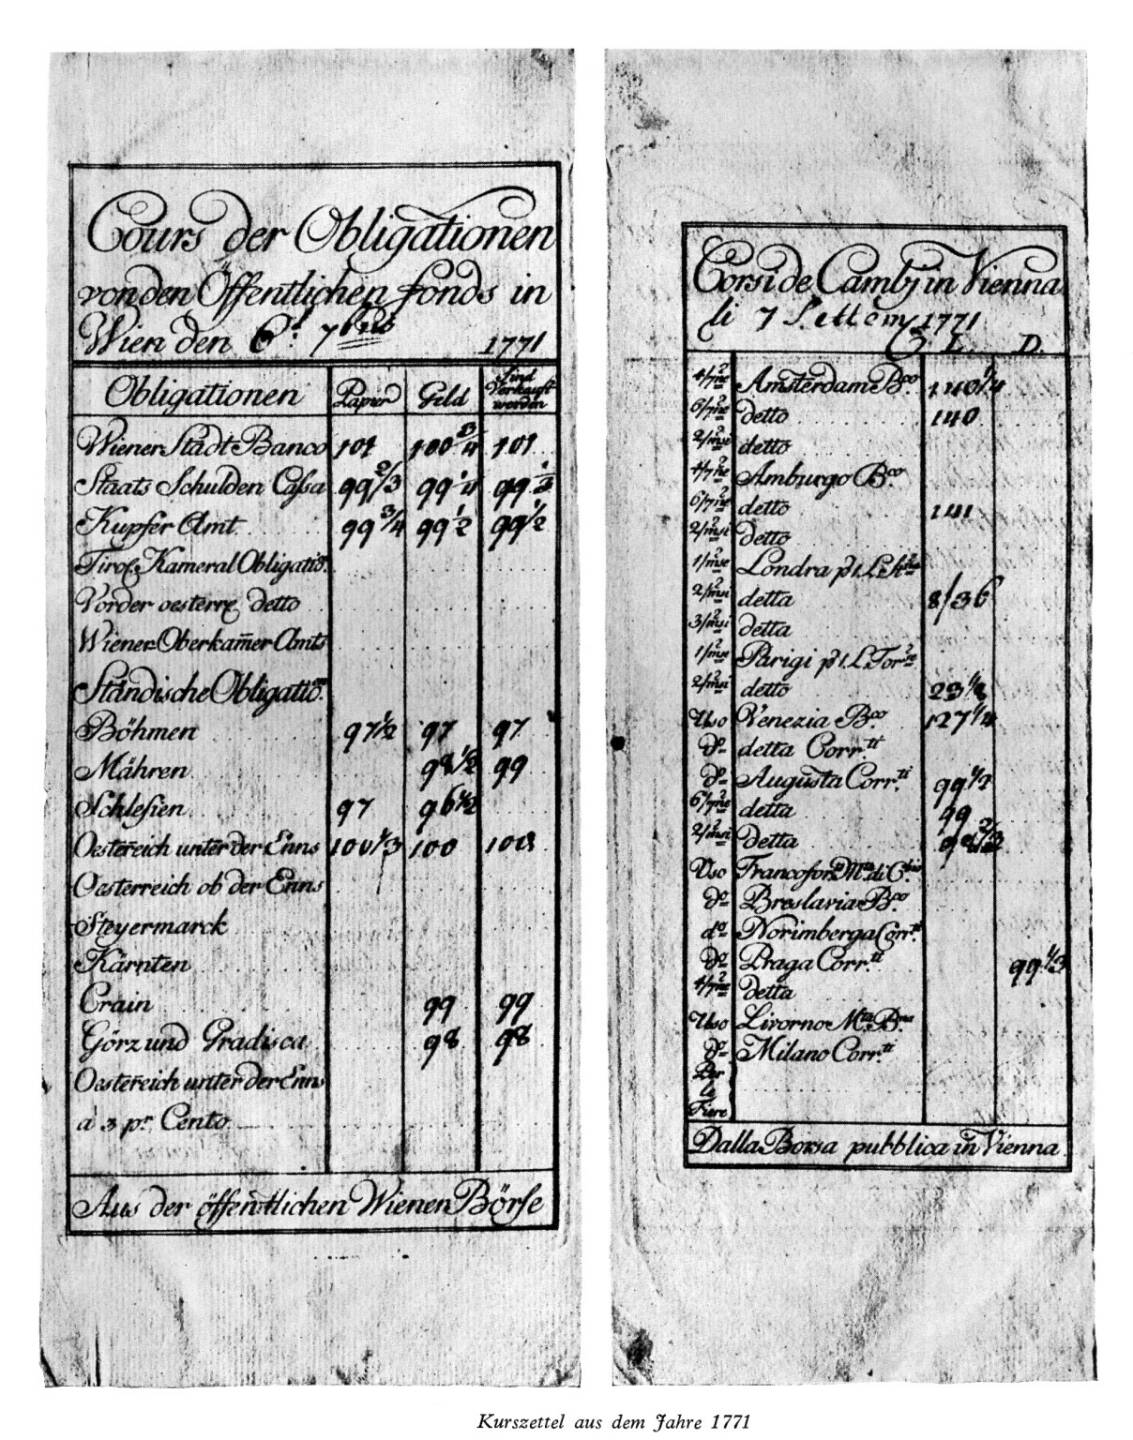 Wiener Börse Kurszettel von 1771. Bildquelle: Wiener Börse